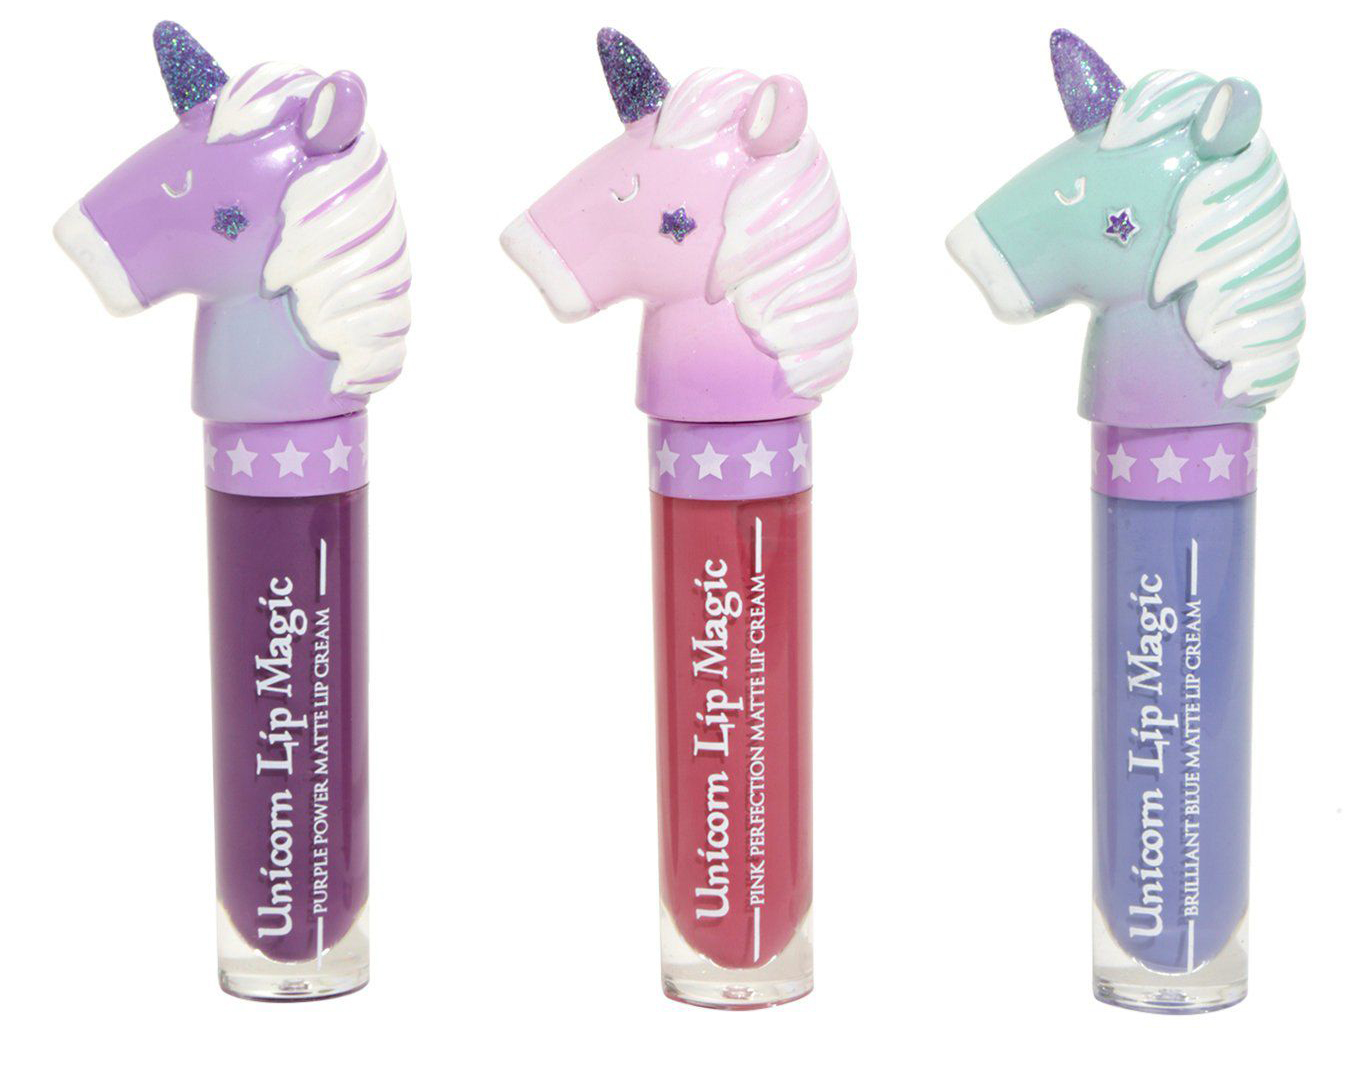 Los labiales de unicornio que querrás llevar este verano